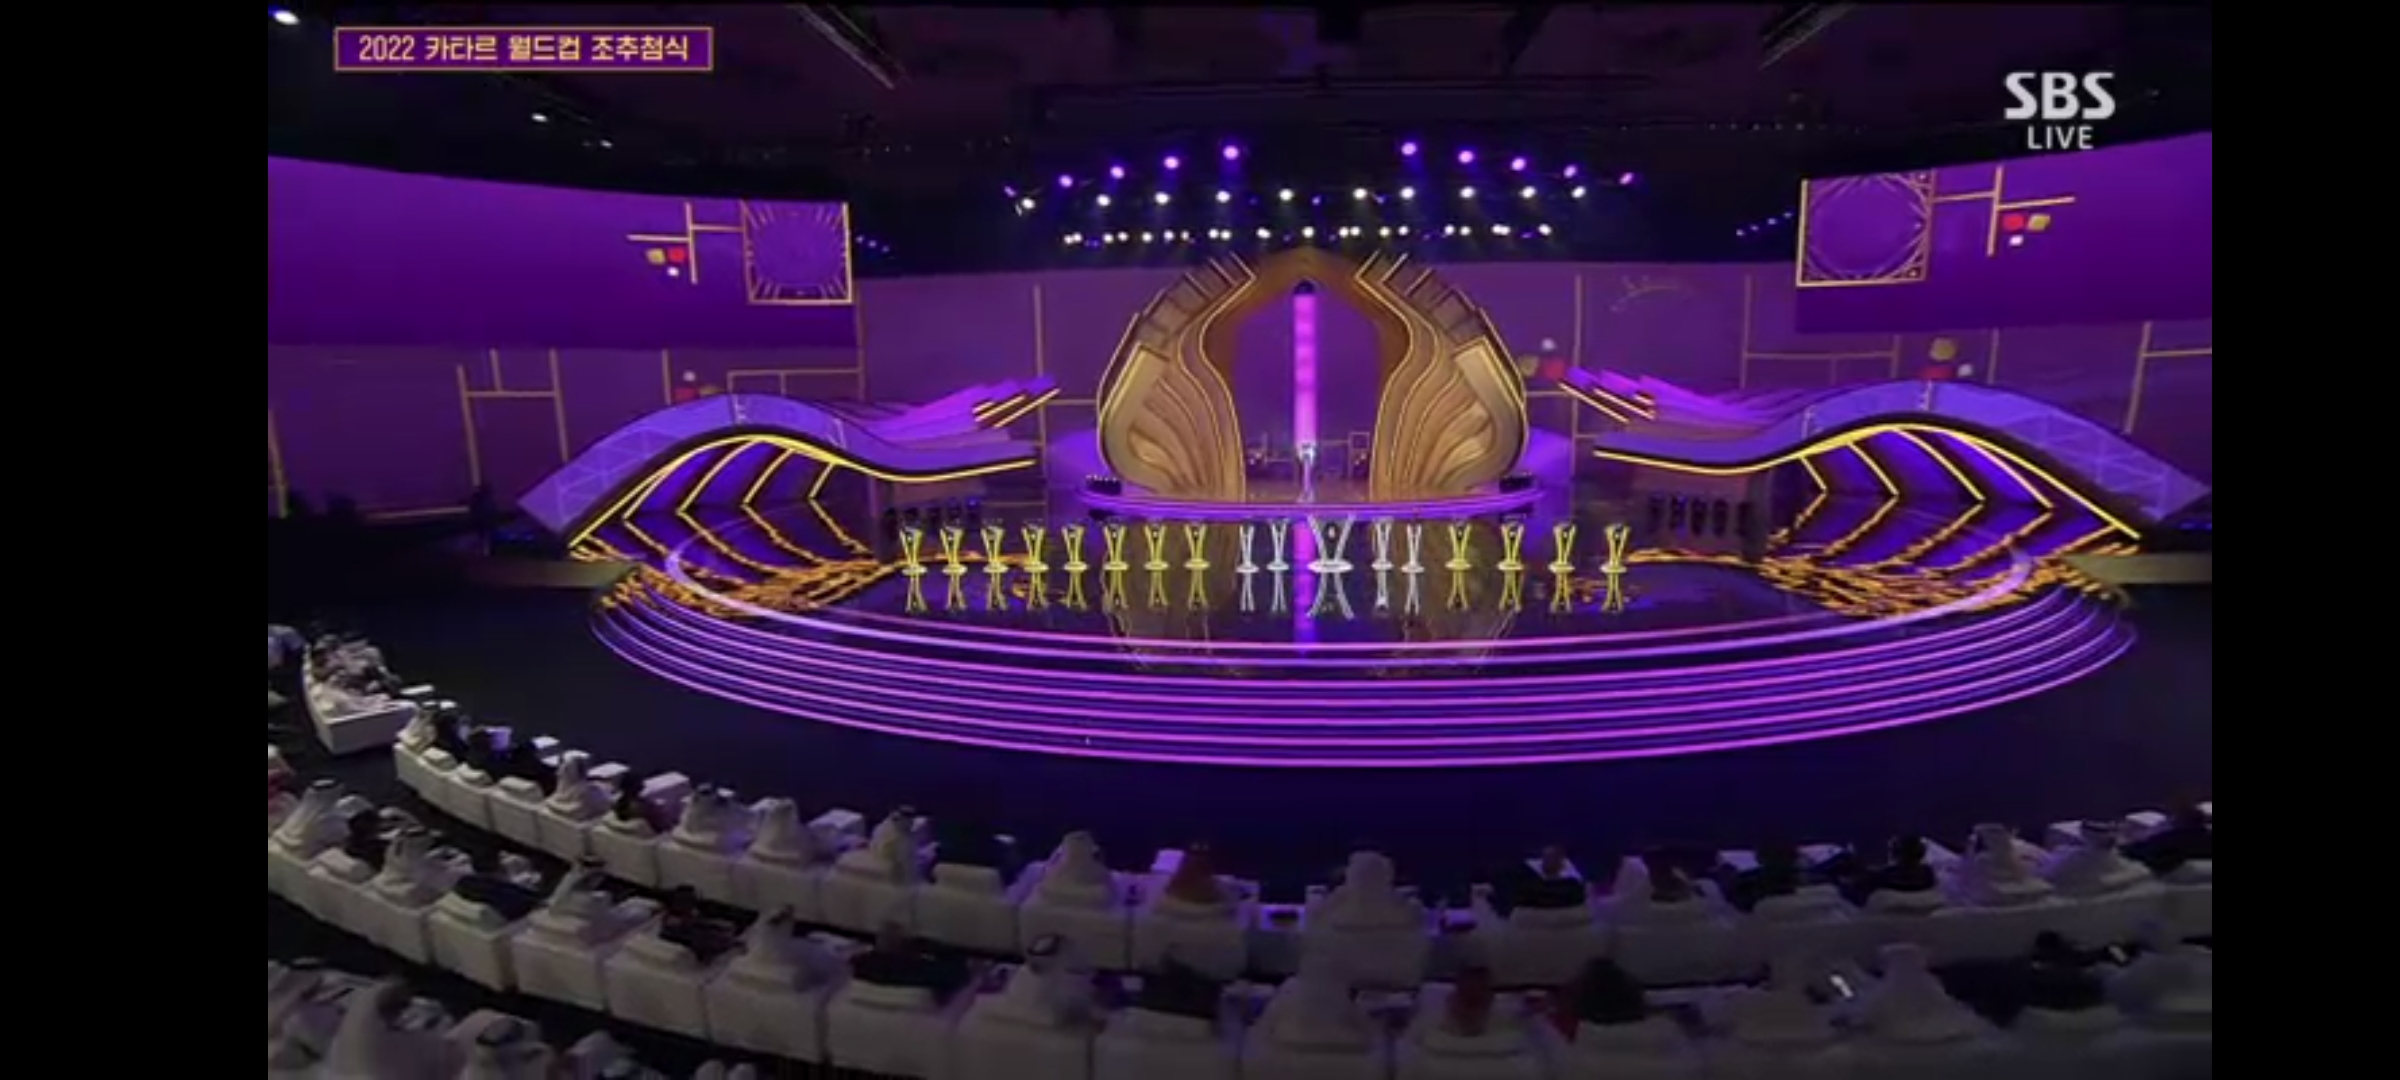 2022 카타르 월드컵 조추첨식 오프닝3